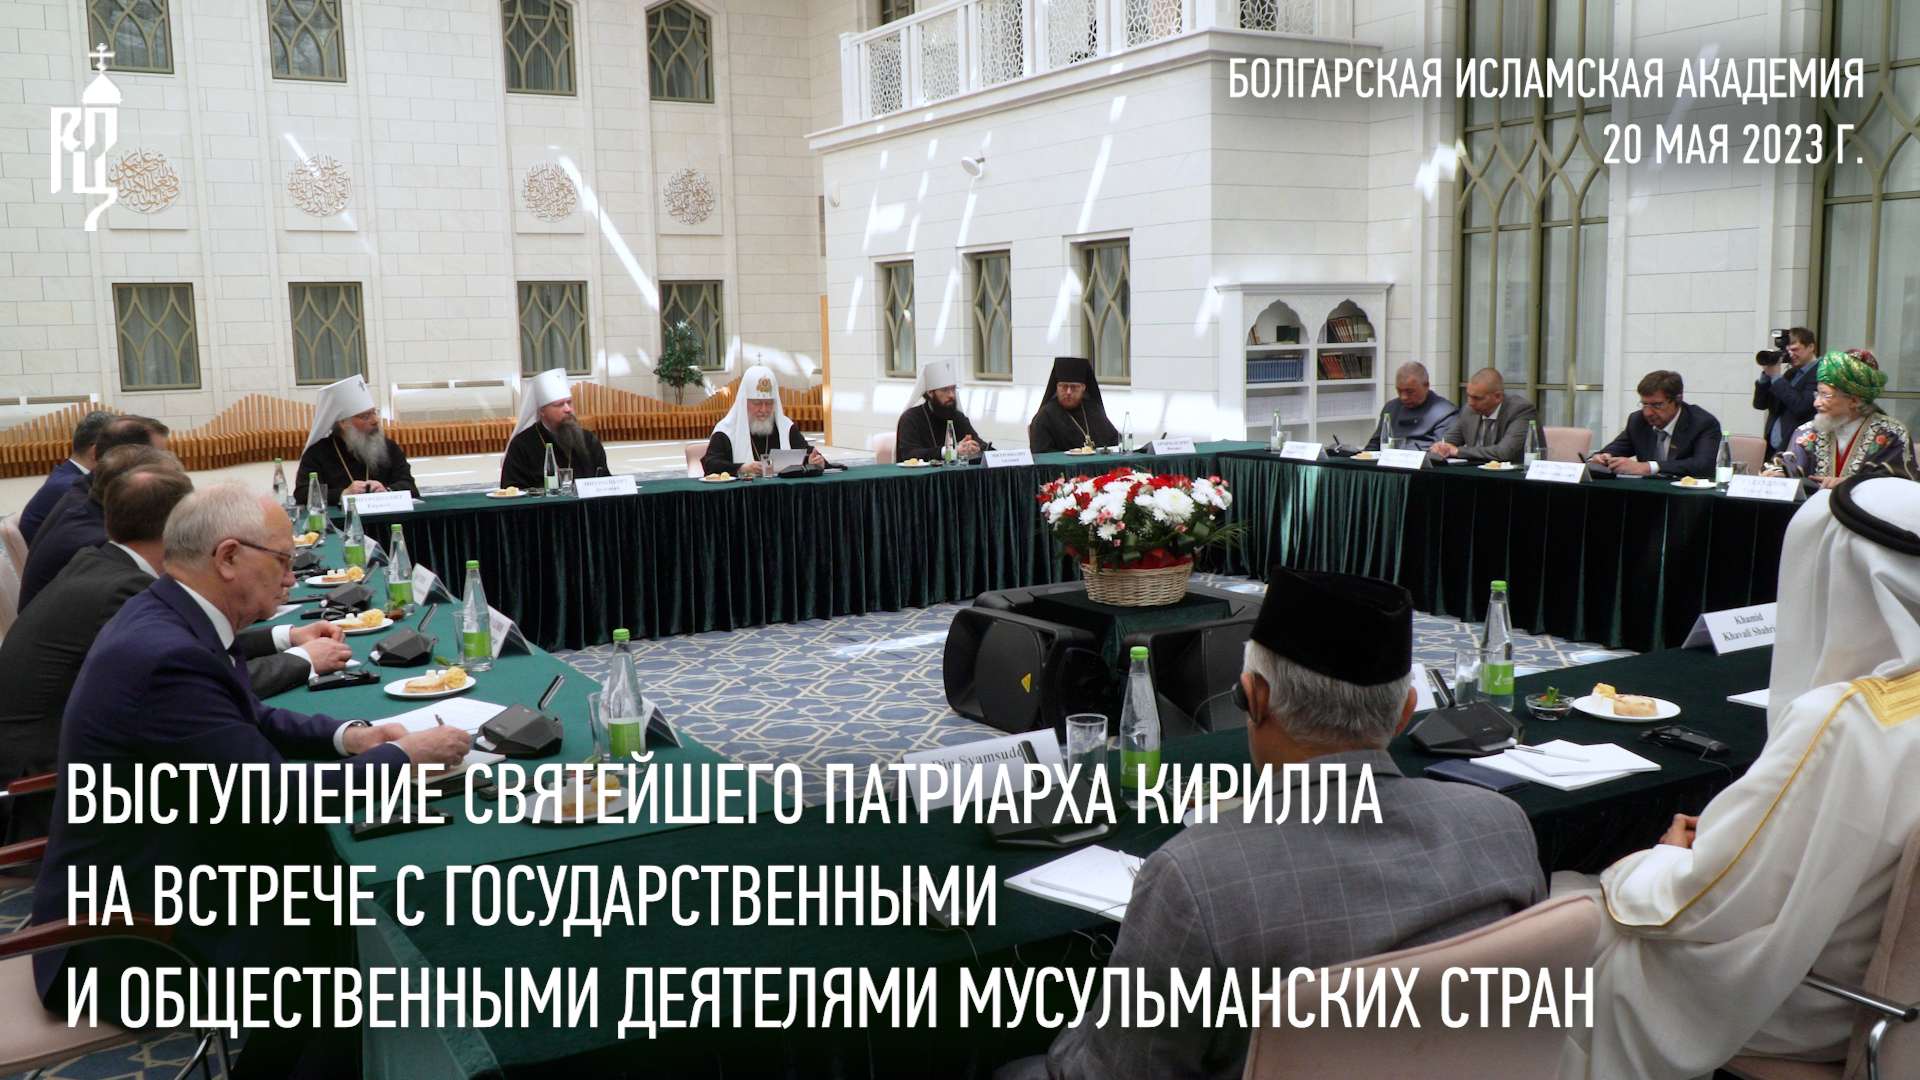 Выступление Святейшего Патриарха Кирилла на встрече с общественными деятелями мусульманских стран